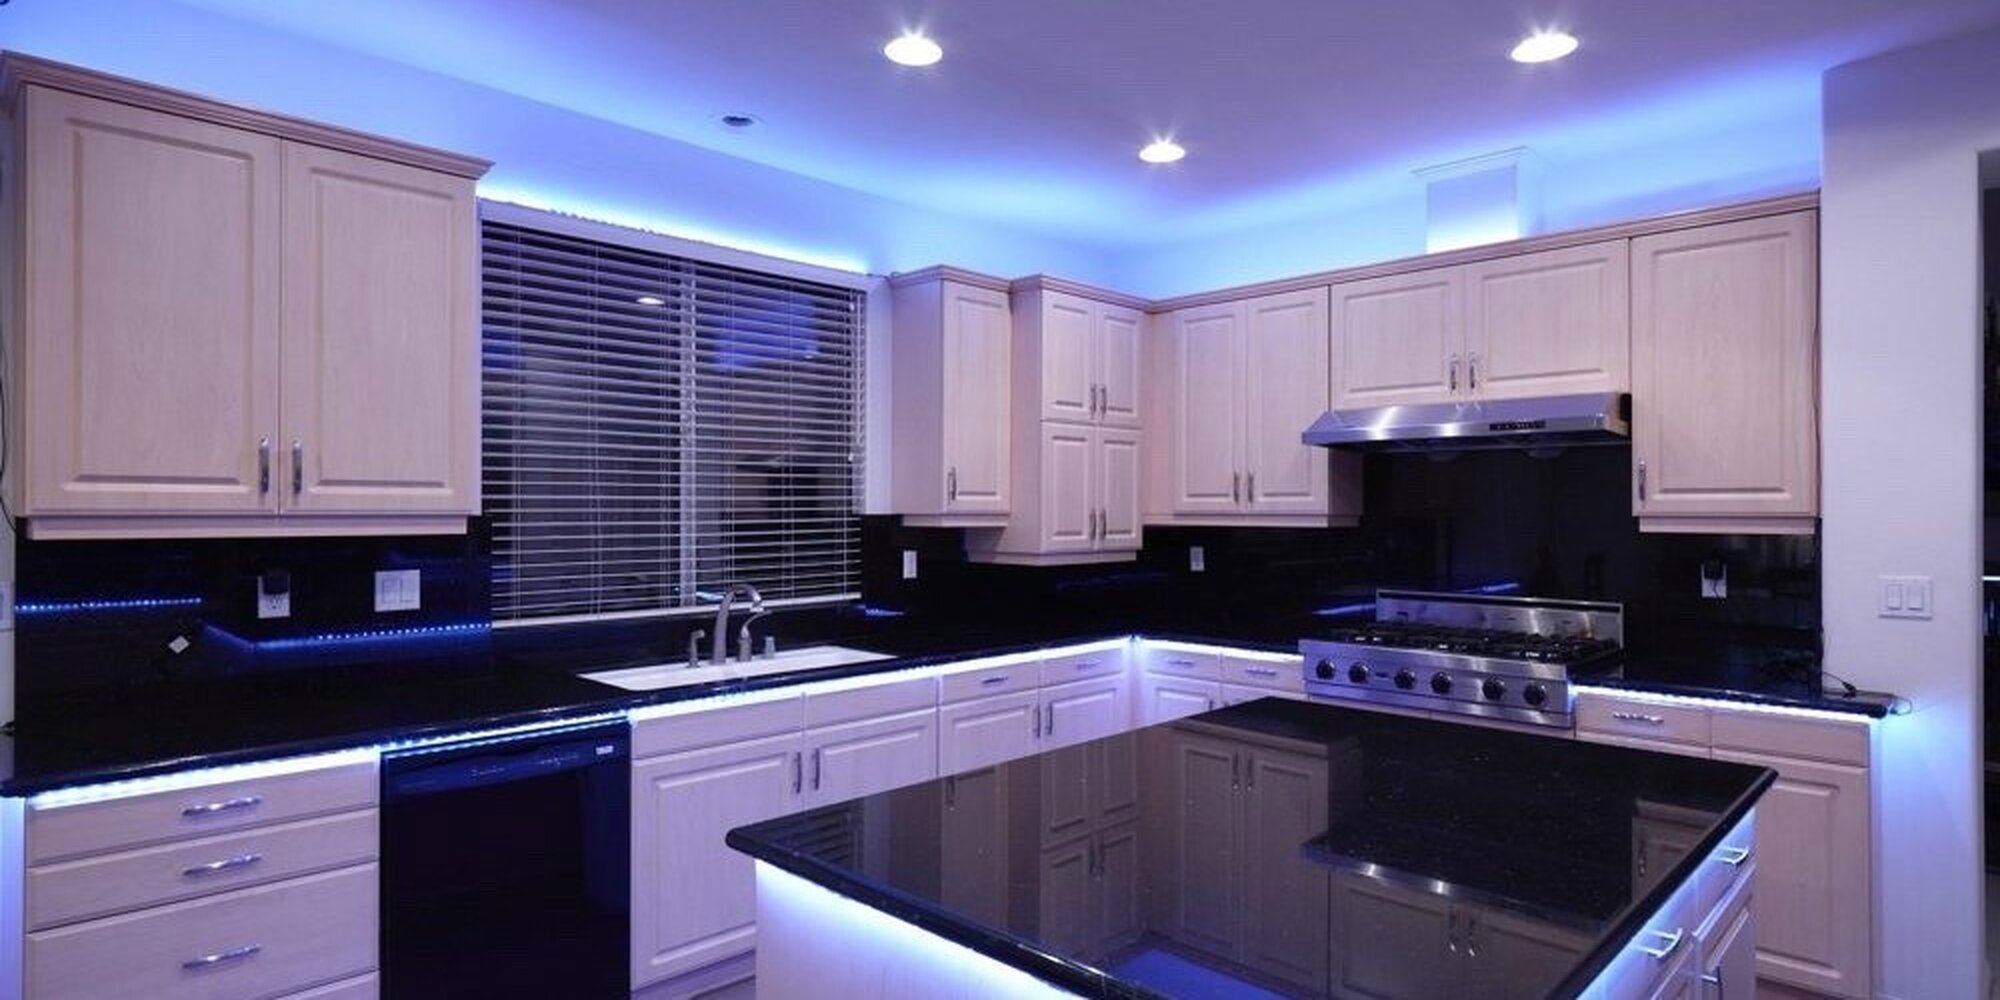 Led since. Светодиодная лента на кухню. Кухонные гарнитуры с подсветкой. Современная кухня с подсветкой. Подсветка кухонного гарнитура светодиодной.